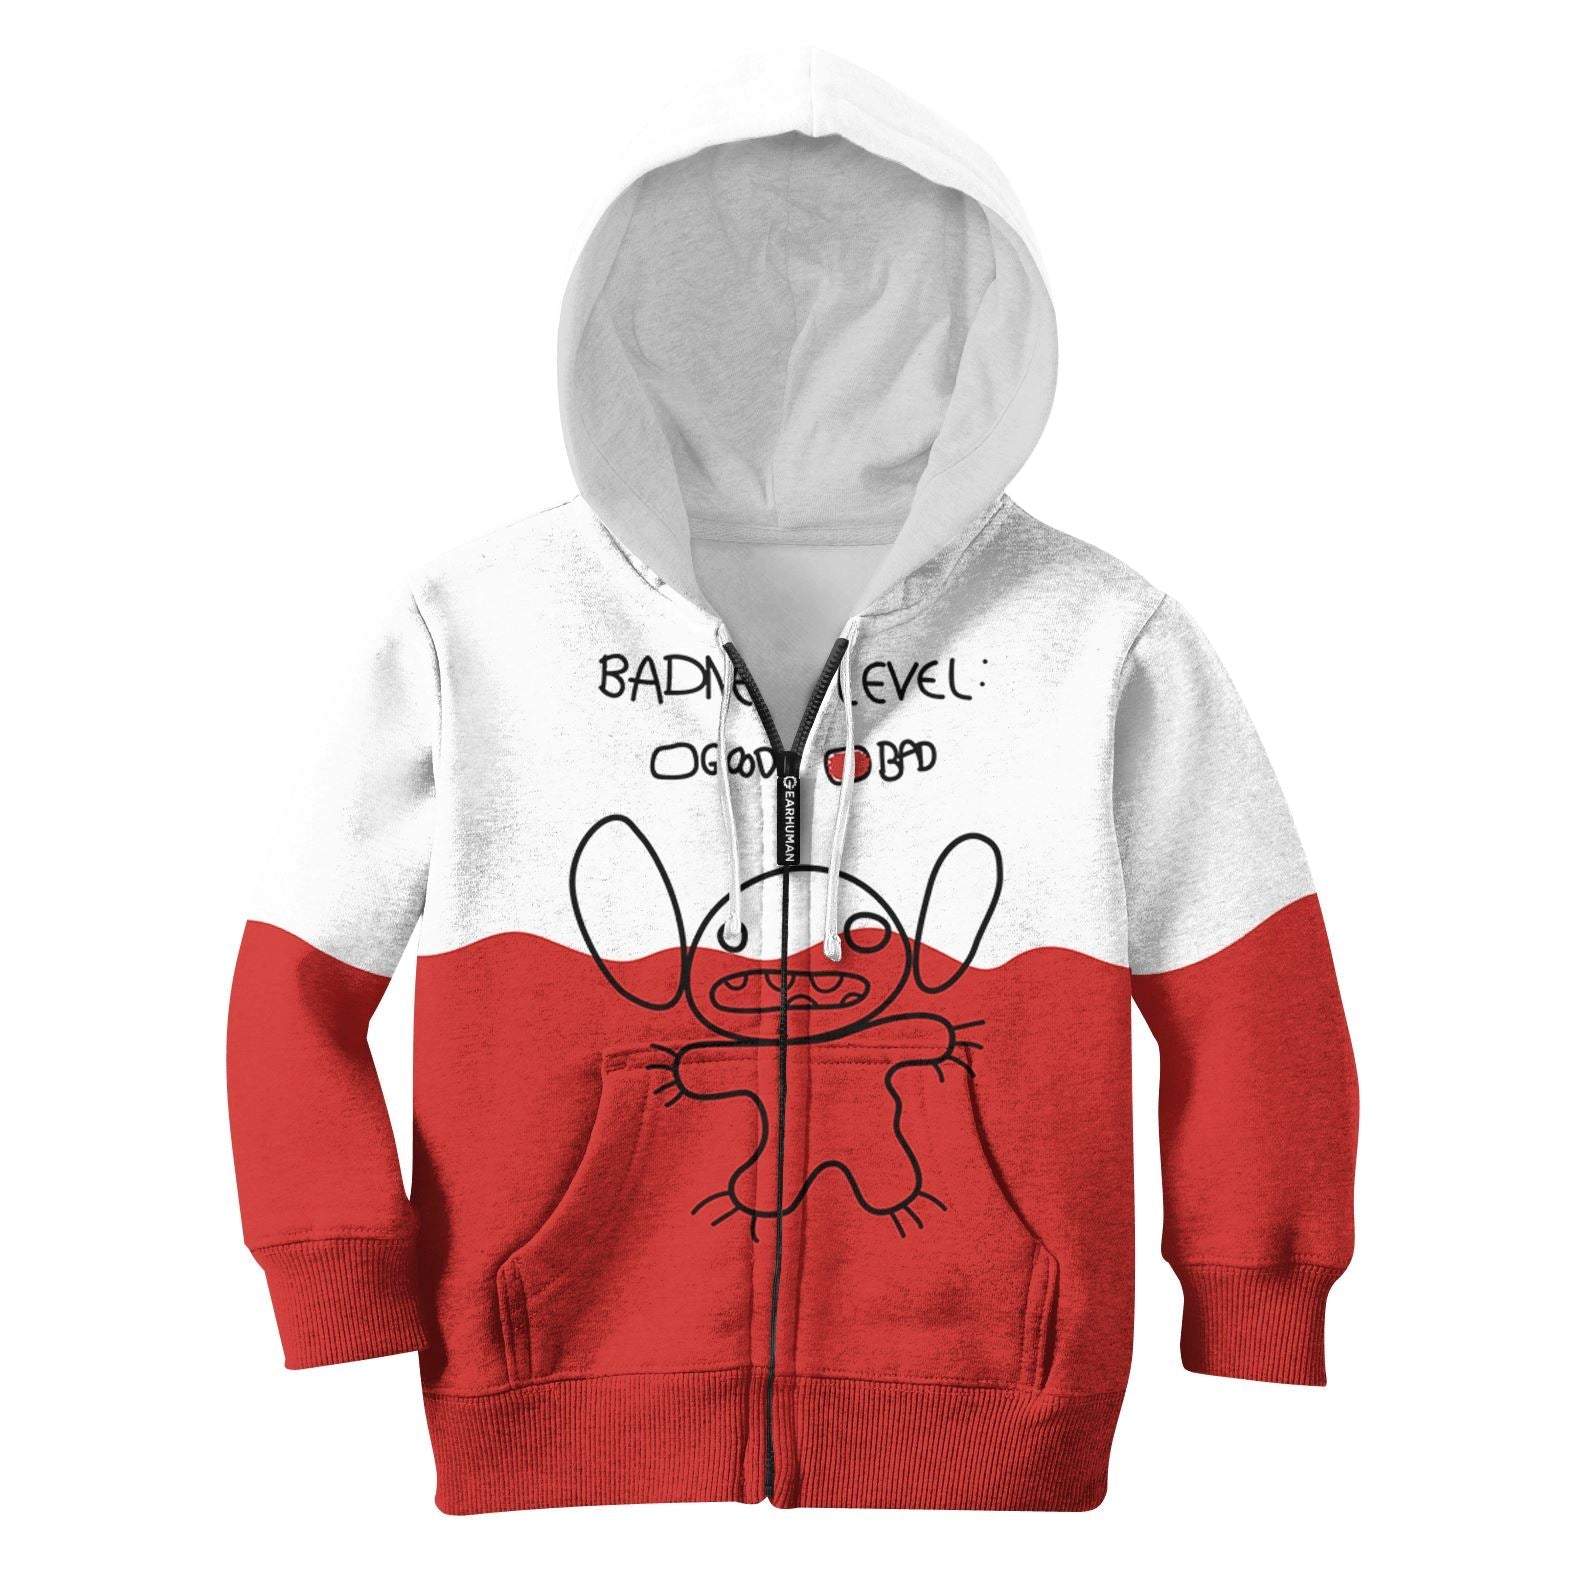 Stitch Kid Custom Hoodies T-shirt Apparel HD-MV111123K kid 3D apparel Kid Zip Hoodie S/6-8 